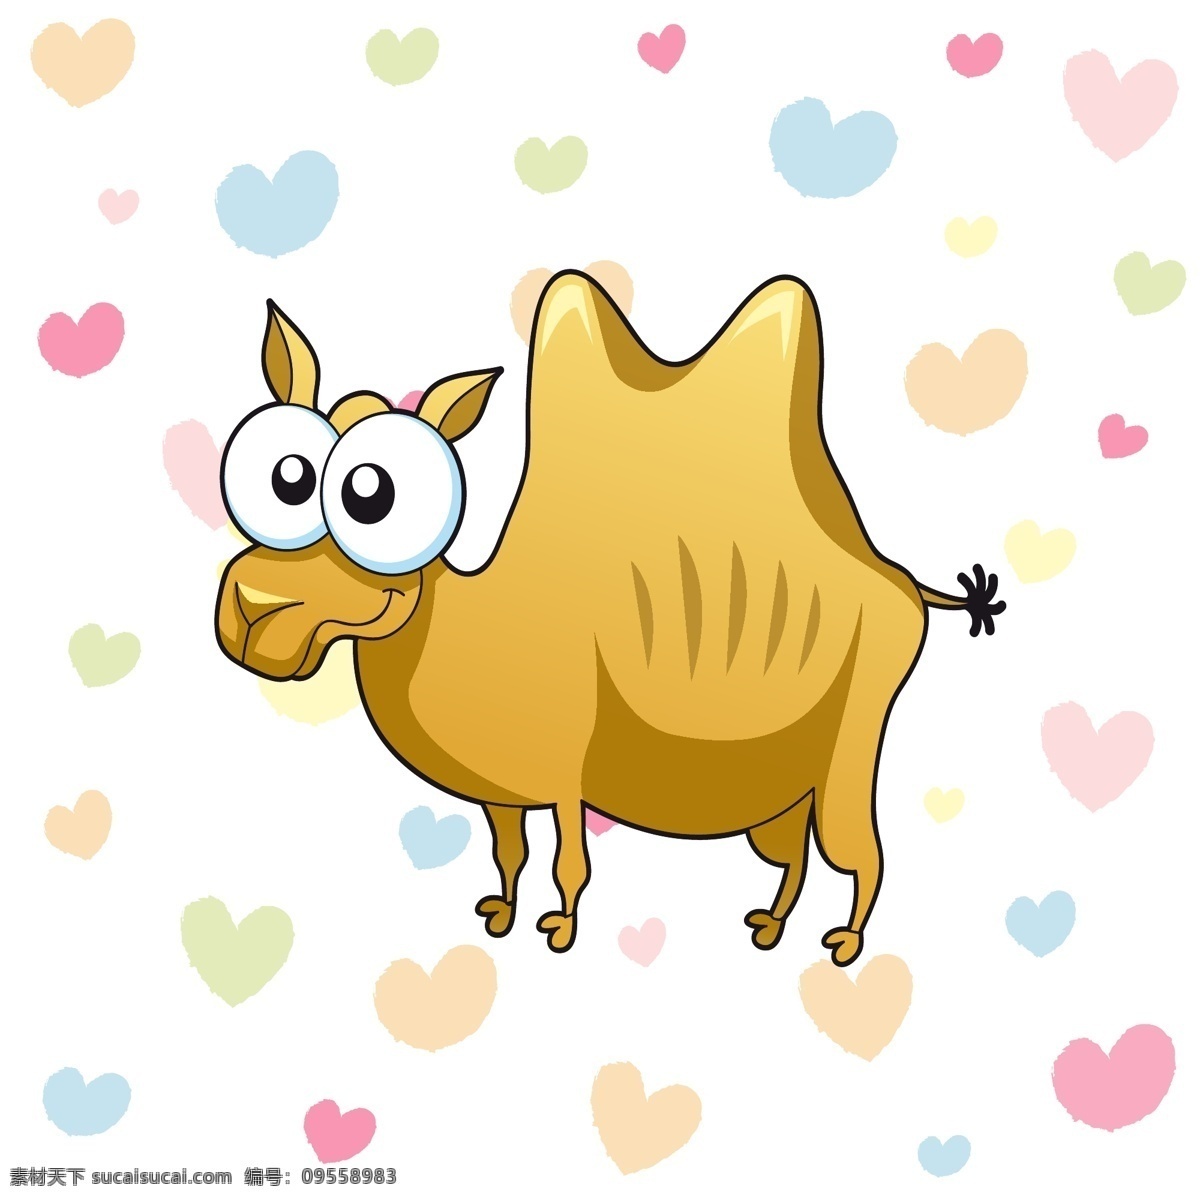 可爱 骆驼 动物 矢量图 平面设计 红心 白色背景 黄色 粉红色 蓝色 卡通 儿童卡通